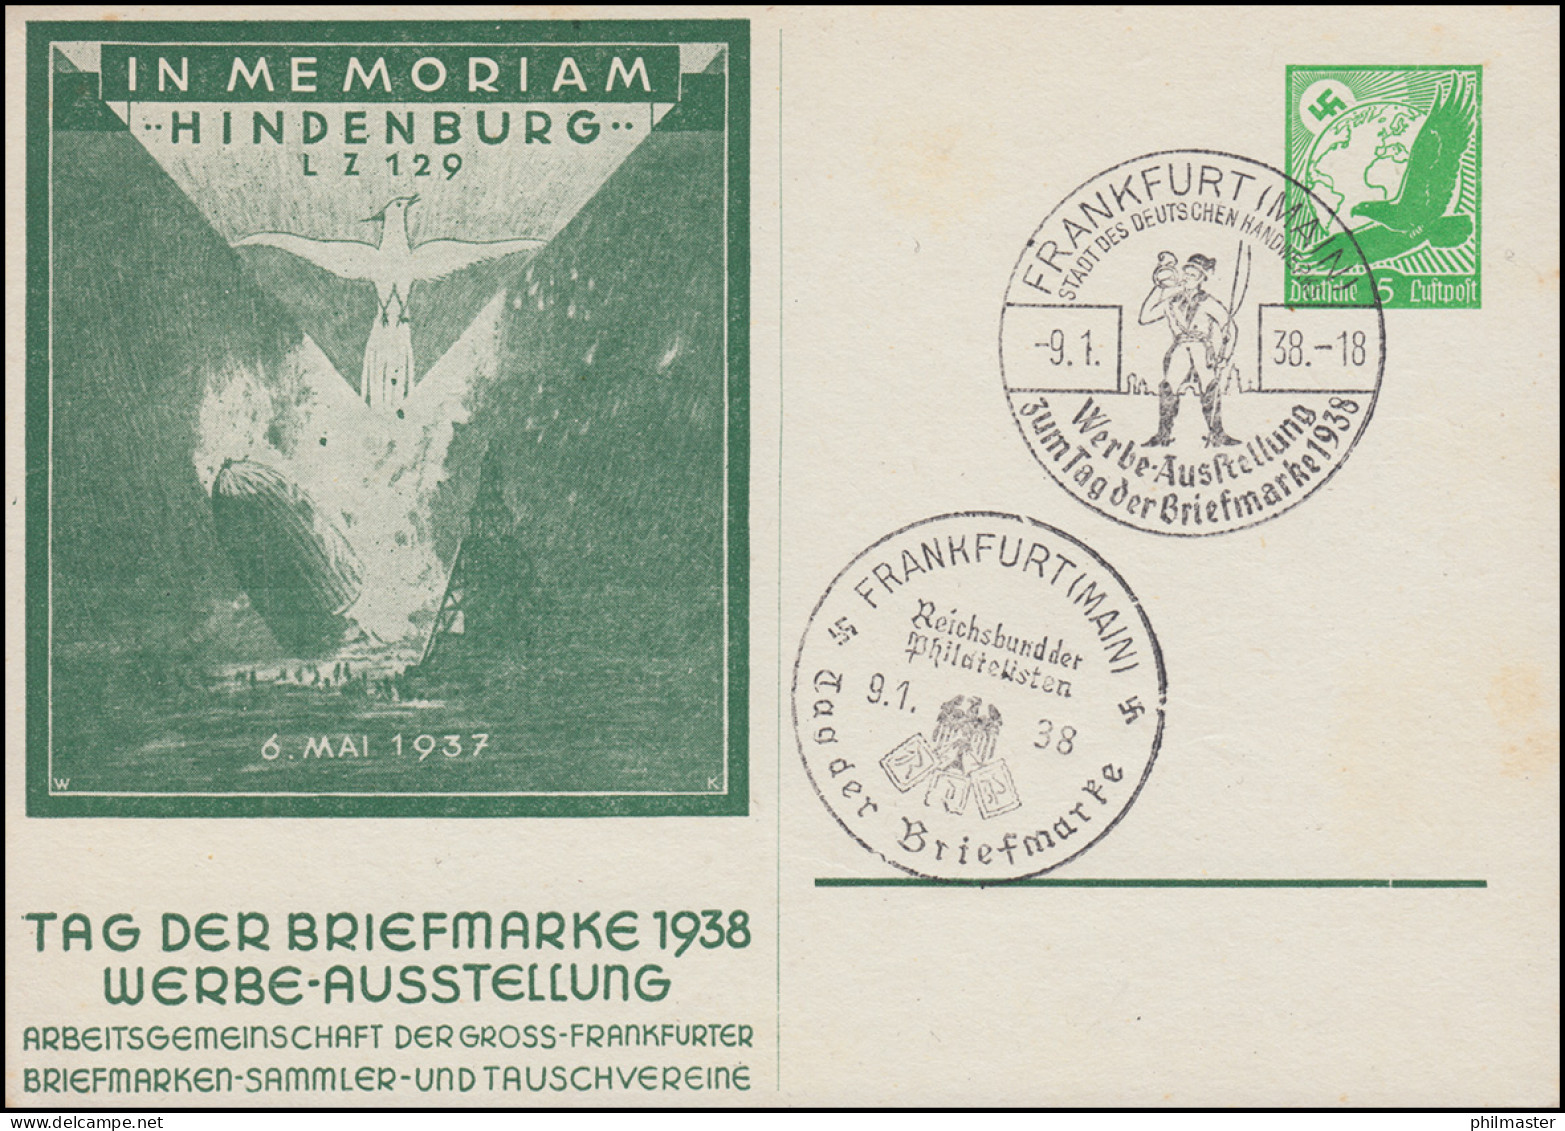 PP 142 Im Memoriam Hindenburg LZ 129 - Tag Der Briefmarke 2 SSt FRANKFURT 9.1.38 - Stamp's Day